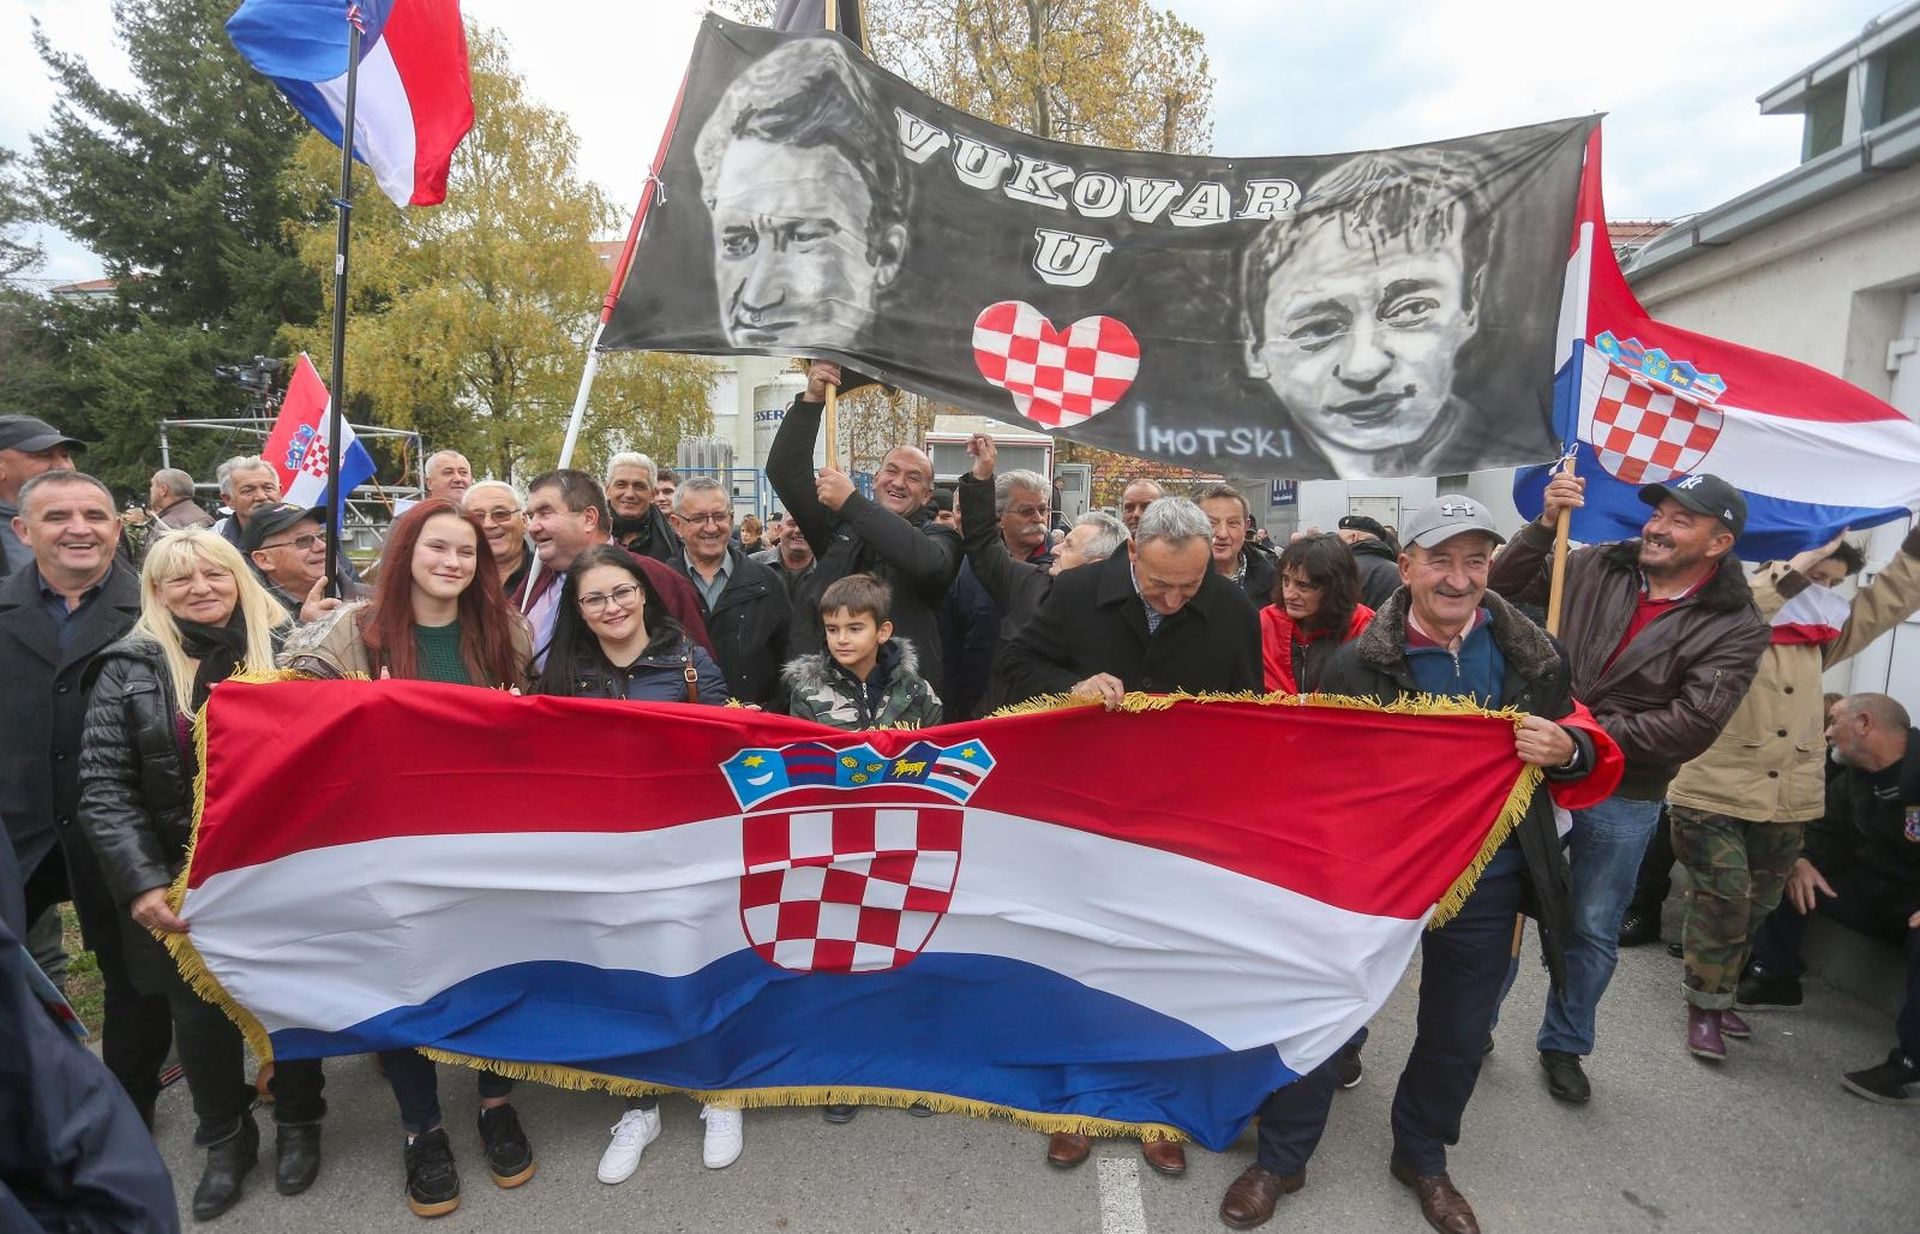 18.11.2019., Vukovar - Okupljanje gradjana u Vukovaru uoci obiljezavanja Dana sjecanja na zrtvu Vukovara. Photo: Davor Javorovic/PIXSELL